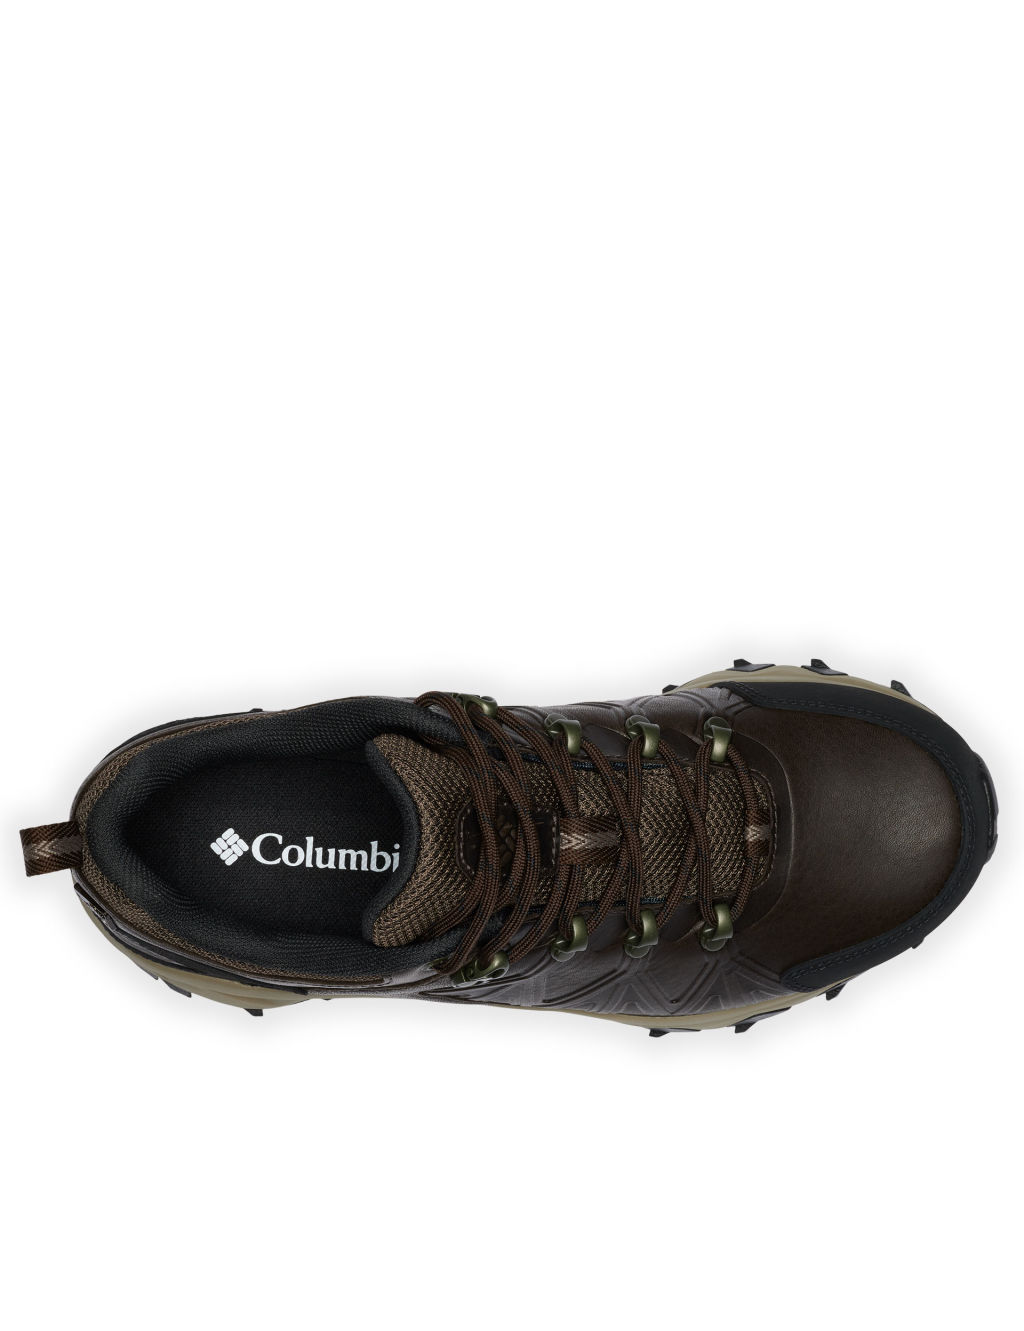 Peakfreak II OutDry Leather Walking Shoes 2 of 6